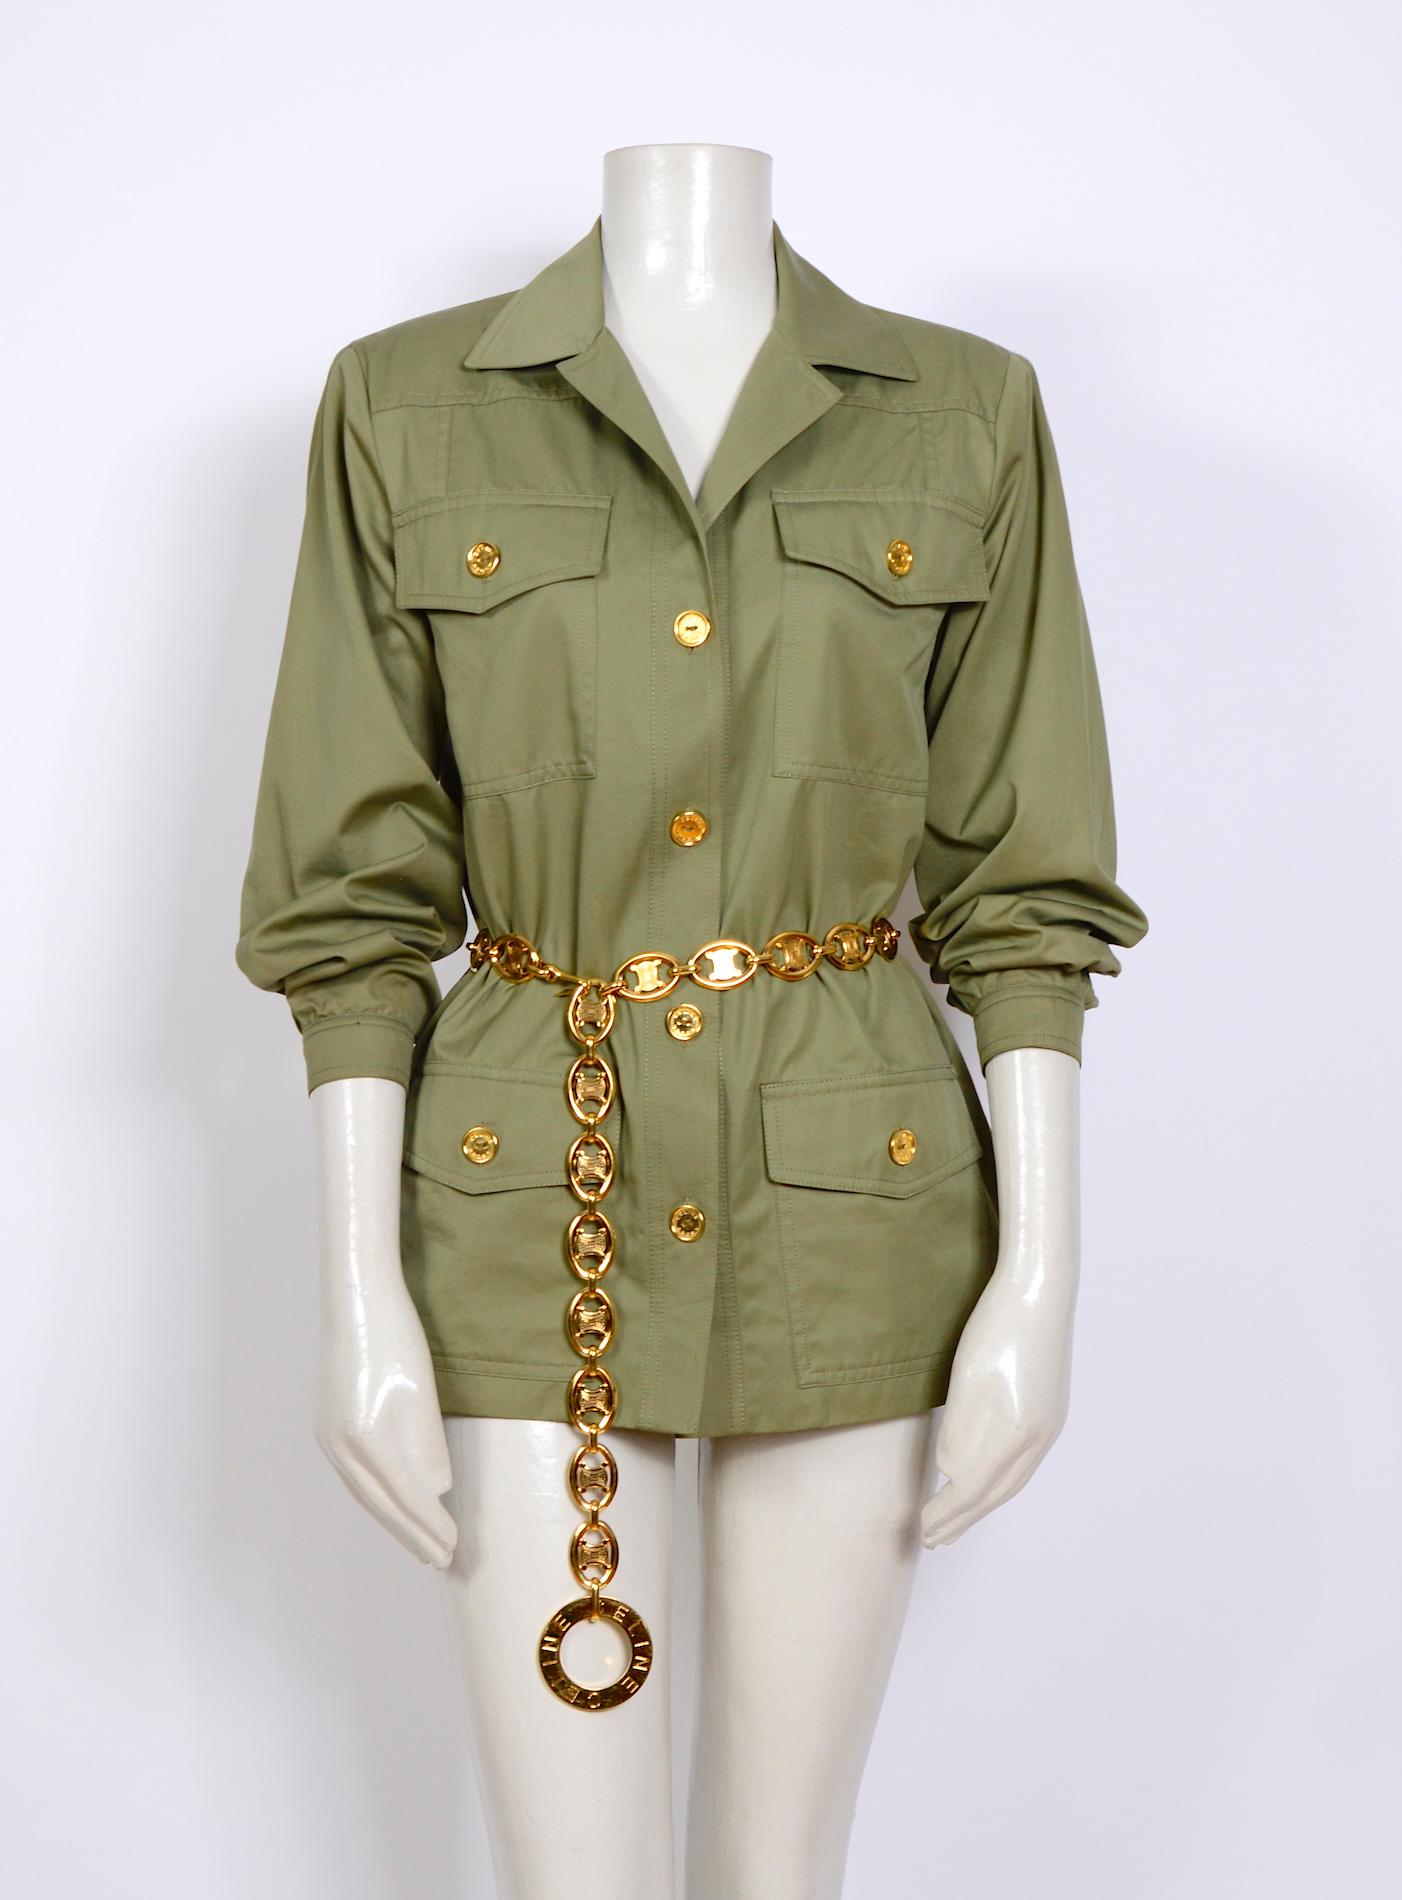 Khakifarbene Baumwoll-Safarijacke und Jupe-Culotte-Anzug von Celine aus den 1970er Jahren.
Ausgezeichneter Zustand. 
Der Gürtel ist nicht im Lieferumfang enthalten, ist aber auf 1stdibs erhältlich.
Bitte beachten Sie die Maße für die perfekte